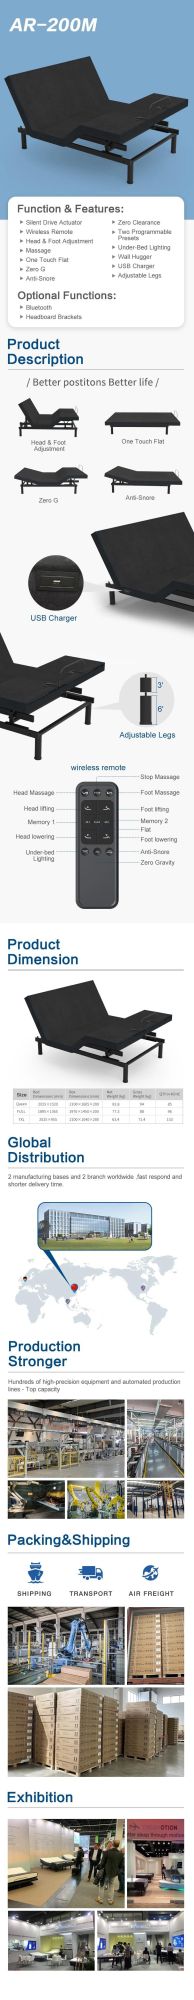 Dreamotiom Best Modern Home Bedroom Furniture Sofa Foldable Adjustable Beds